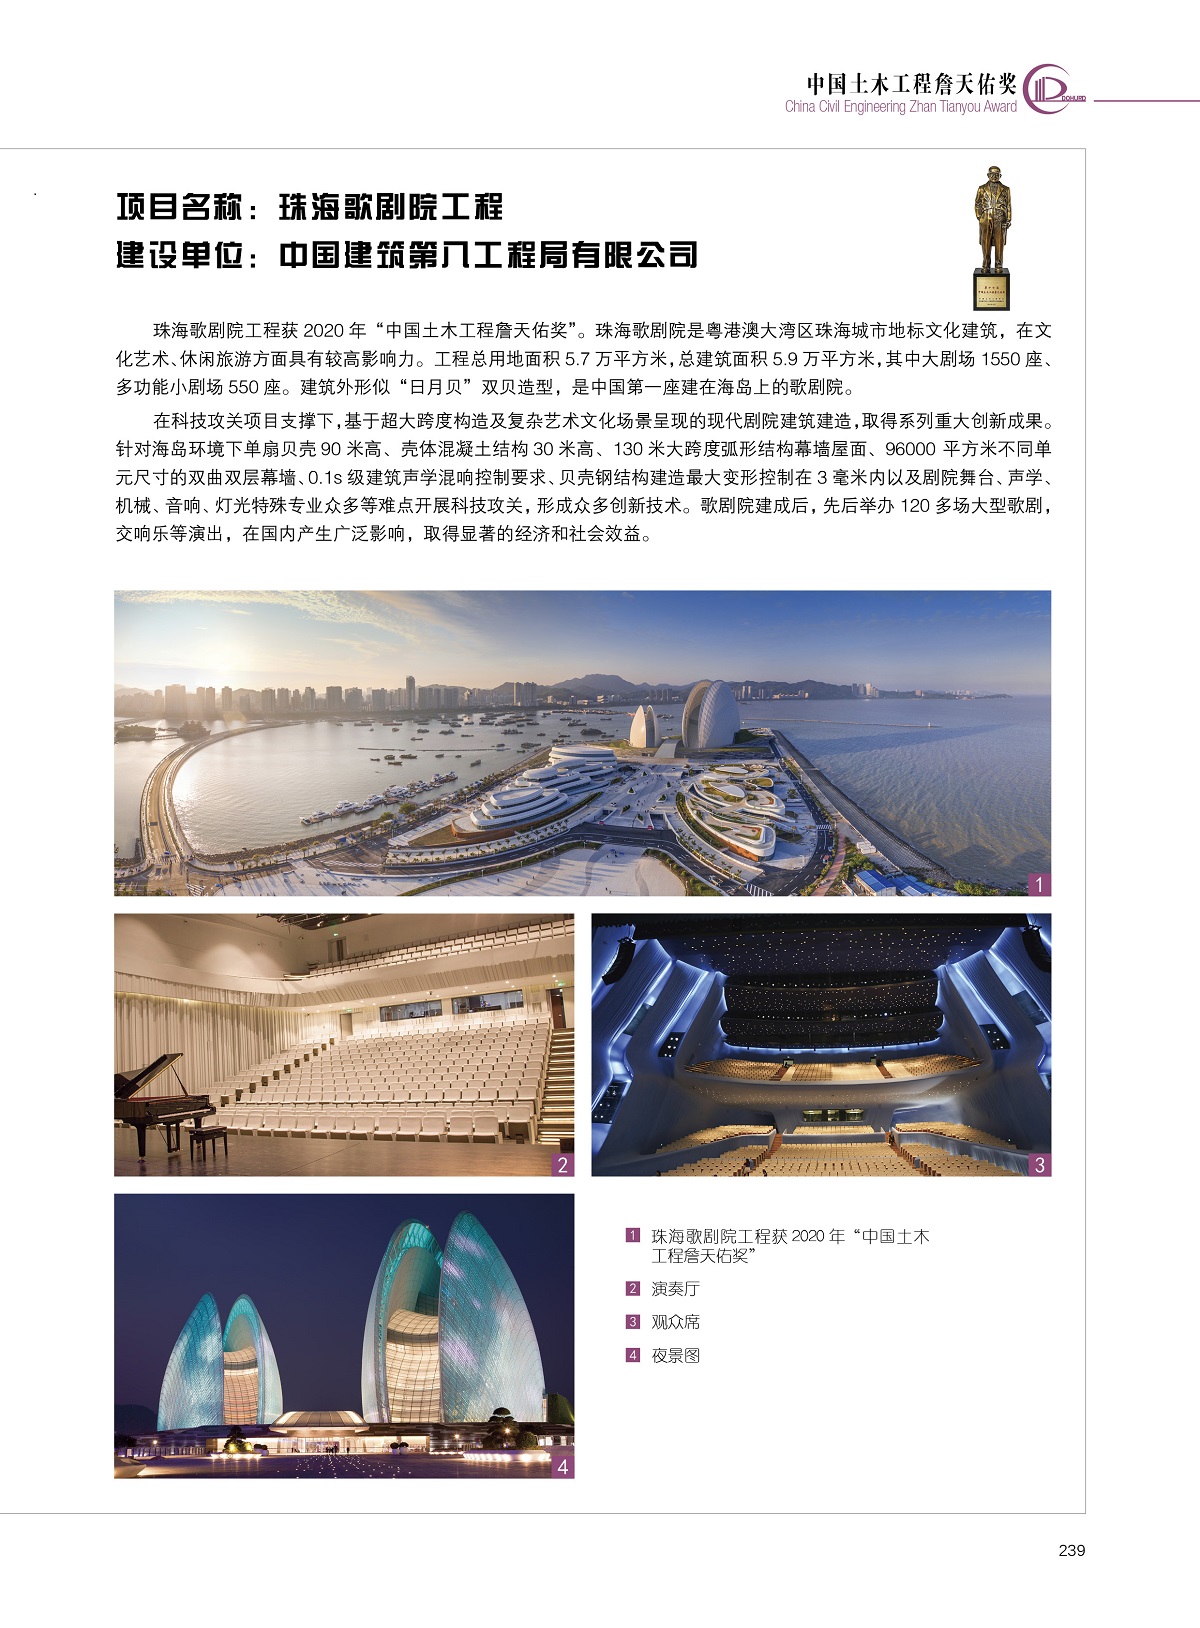 珠海歌剧院工程【中国建筑第八工程局有限公司】.jpg